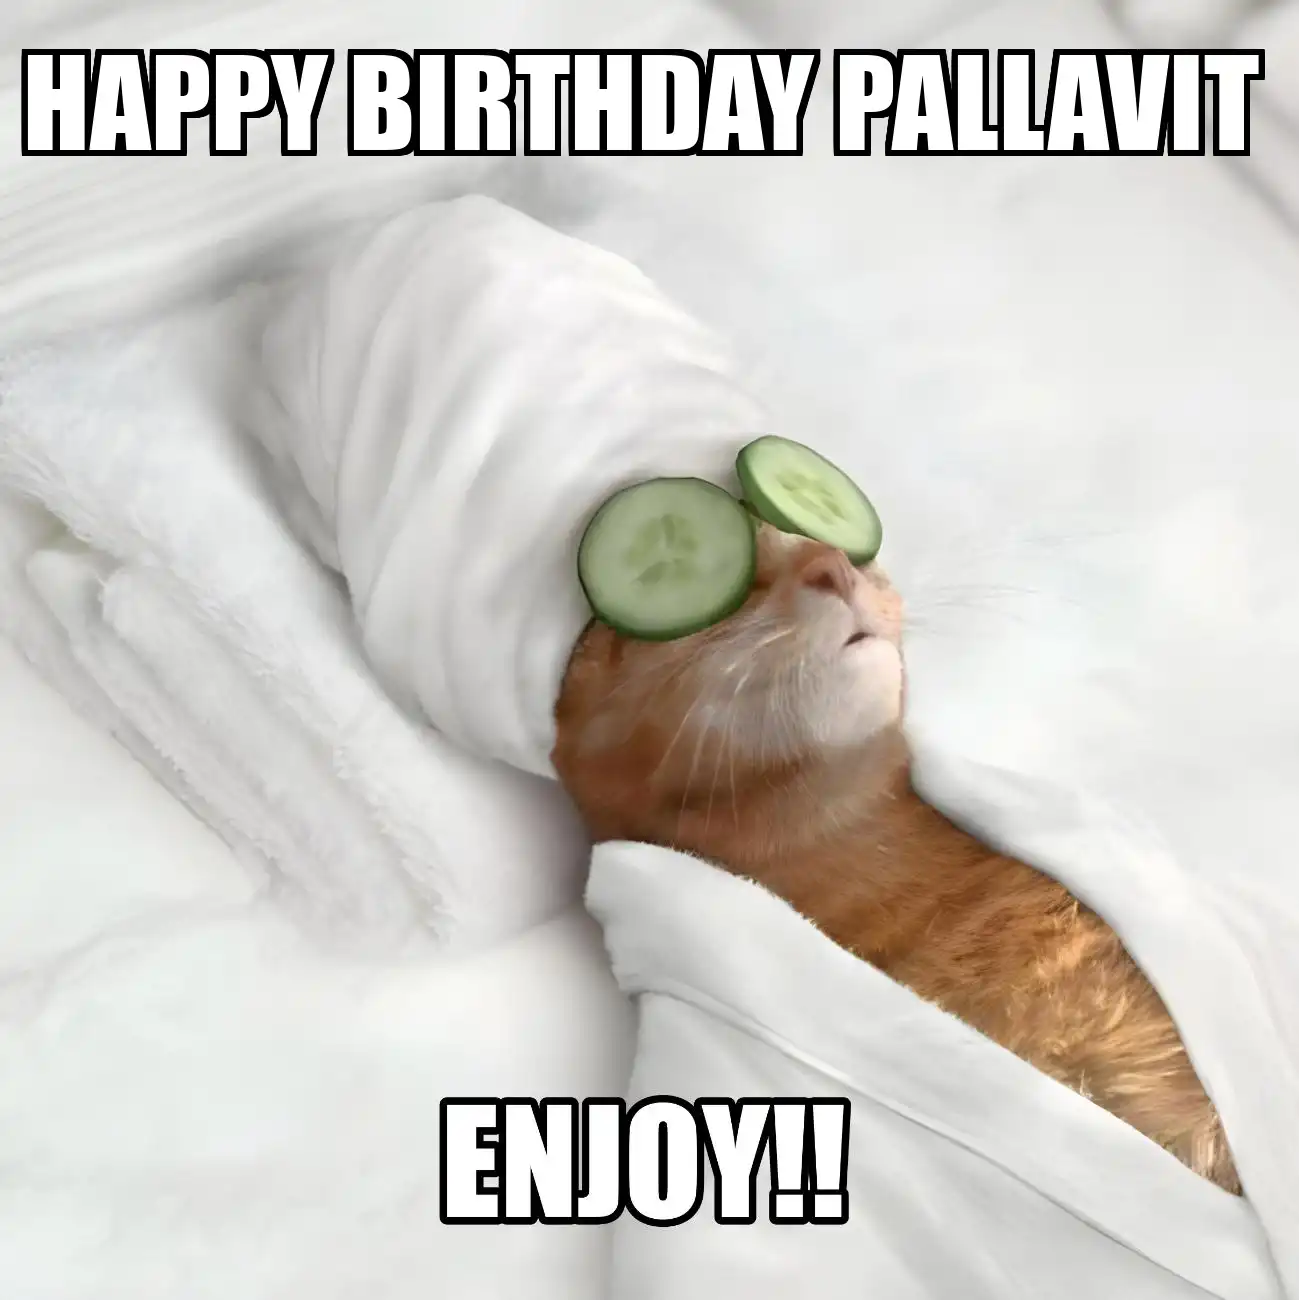 Happy Birthday Pallavit Enjoy Cat Meme